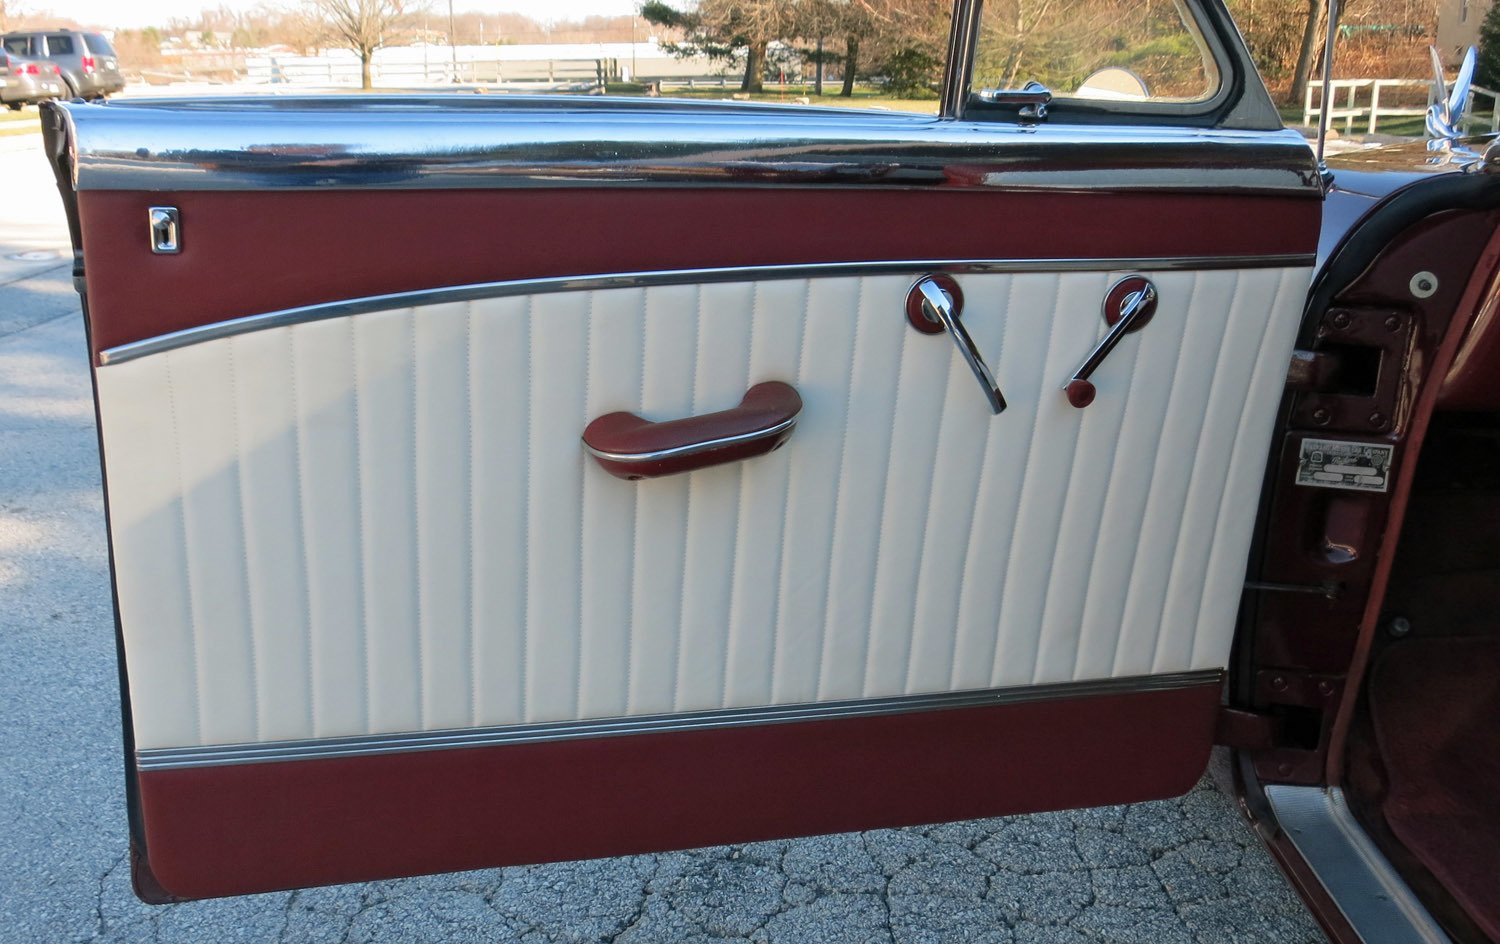 1951 Packard 250